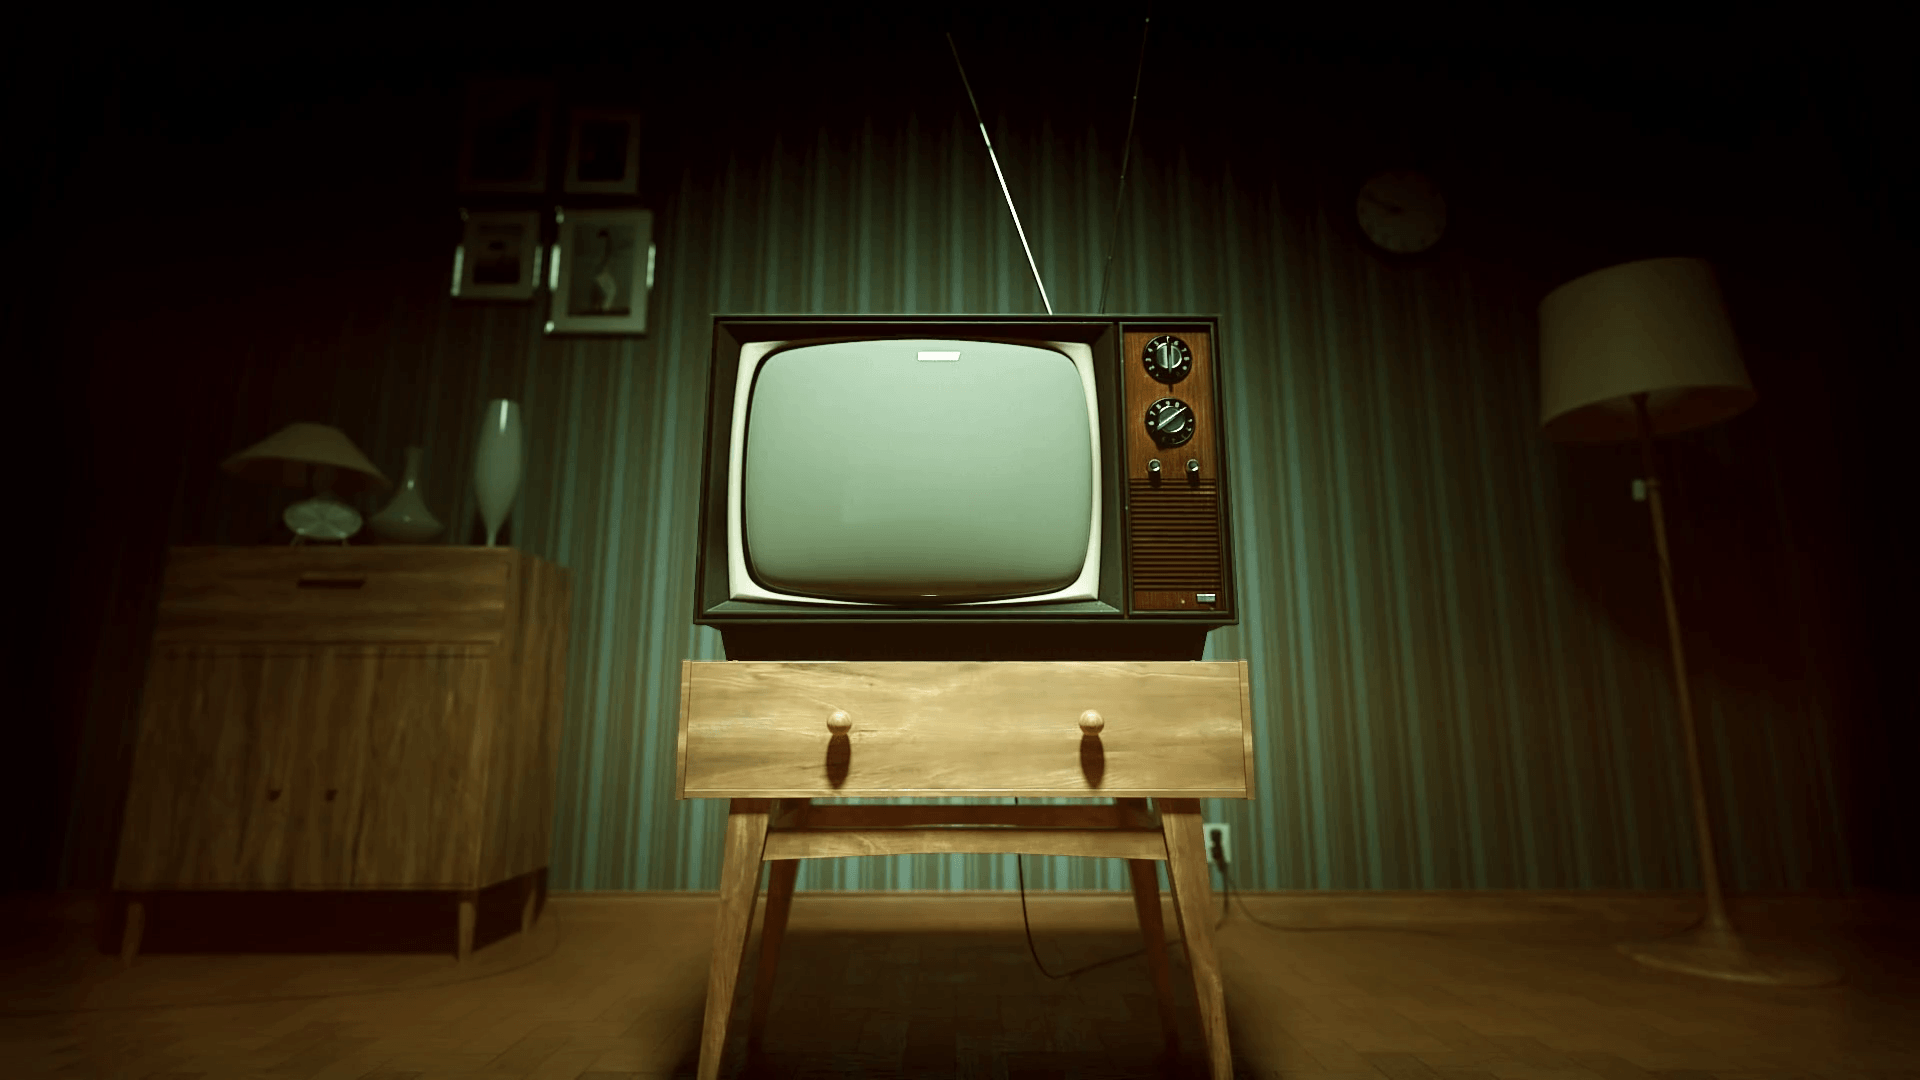 living room tv retro